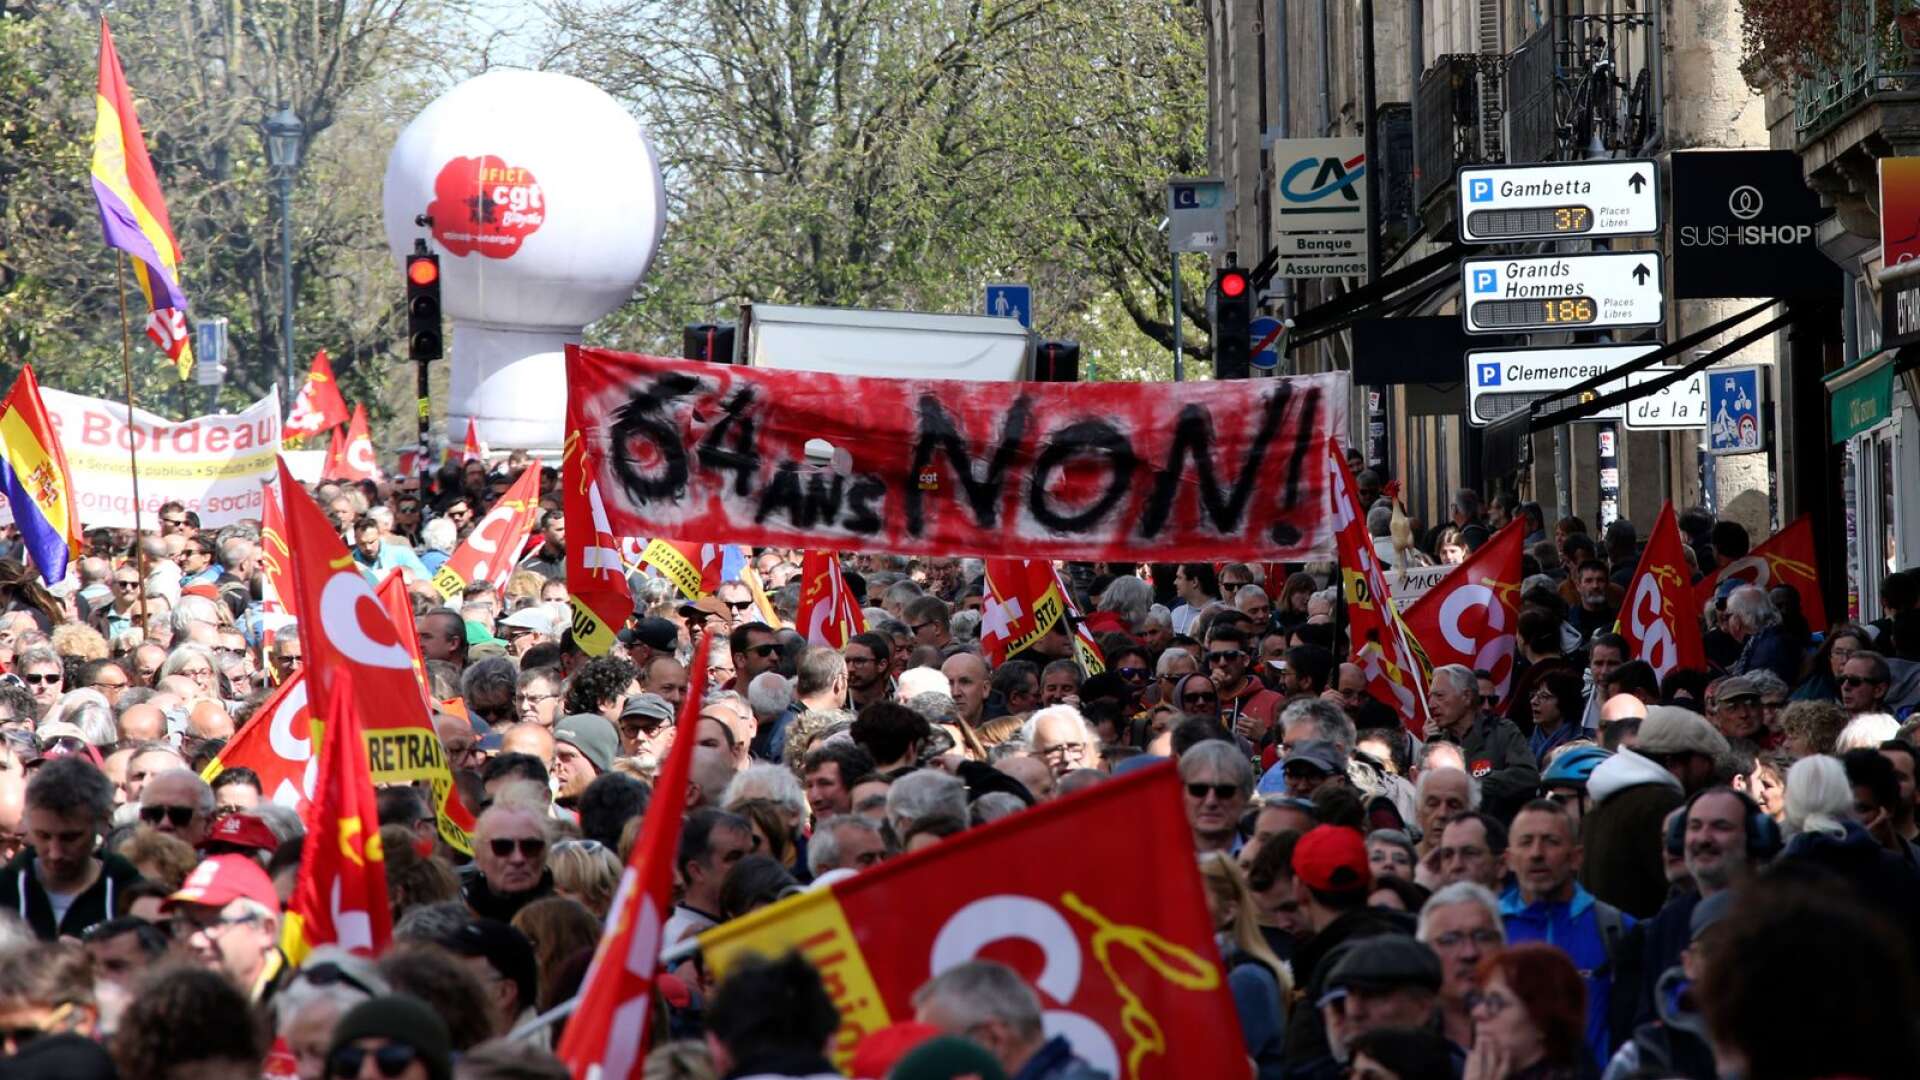 Nu är protesterna stora i Frankrike för att höja pensionsåldern till 64 år. Här har vi successivt höjt pensionsåldern till nu 67 år, skriver Blåvitt Elofsson.